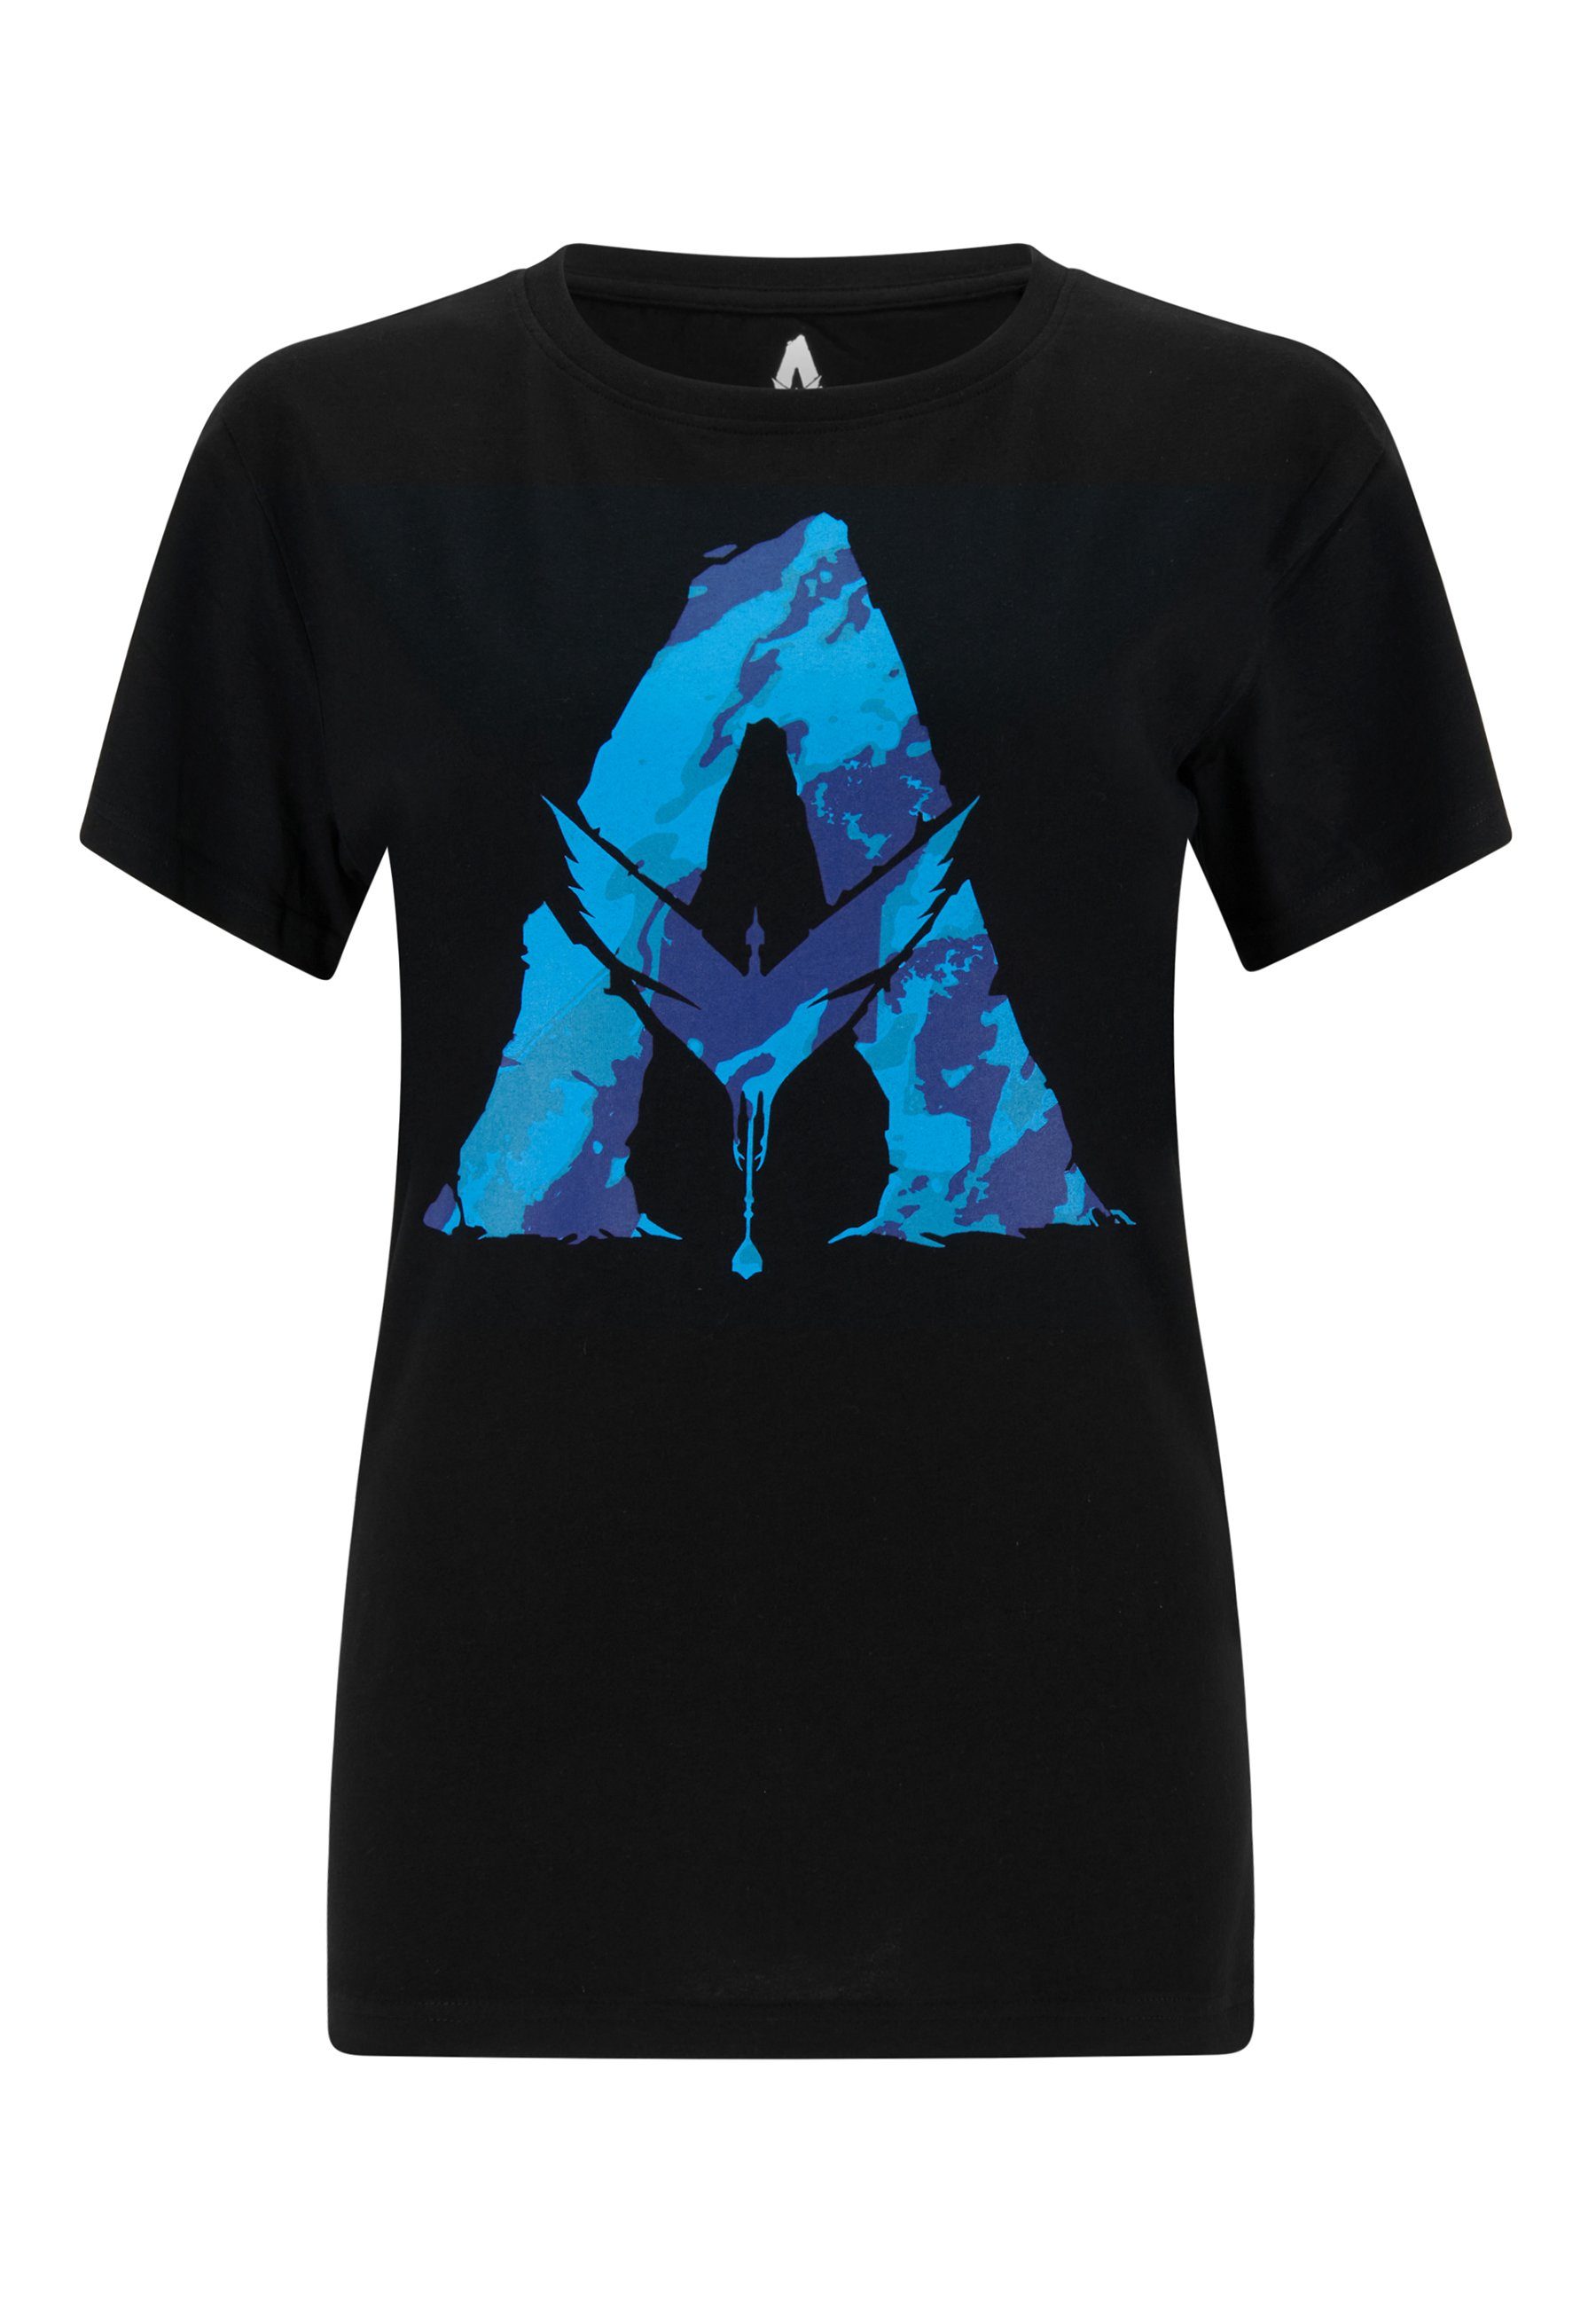 T-Shirt Kurzarm-Shirt Herren ONOMATO! Avatar T-Shirt